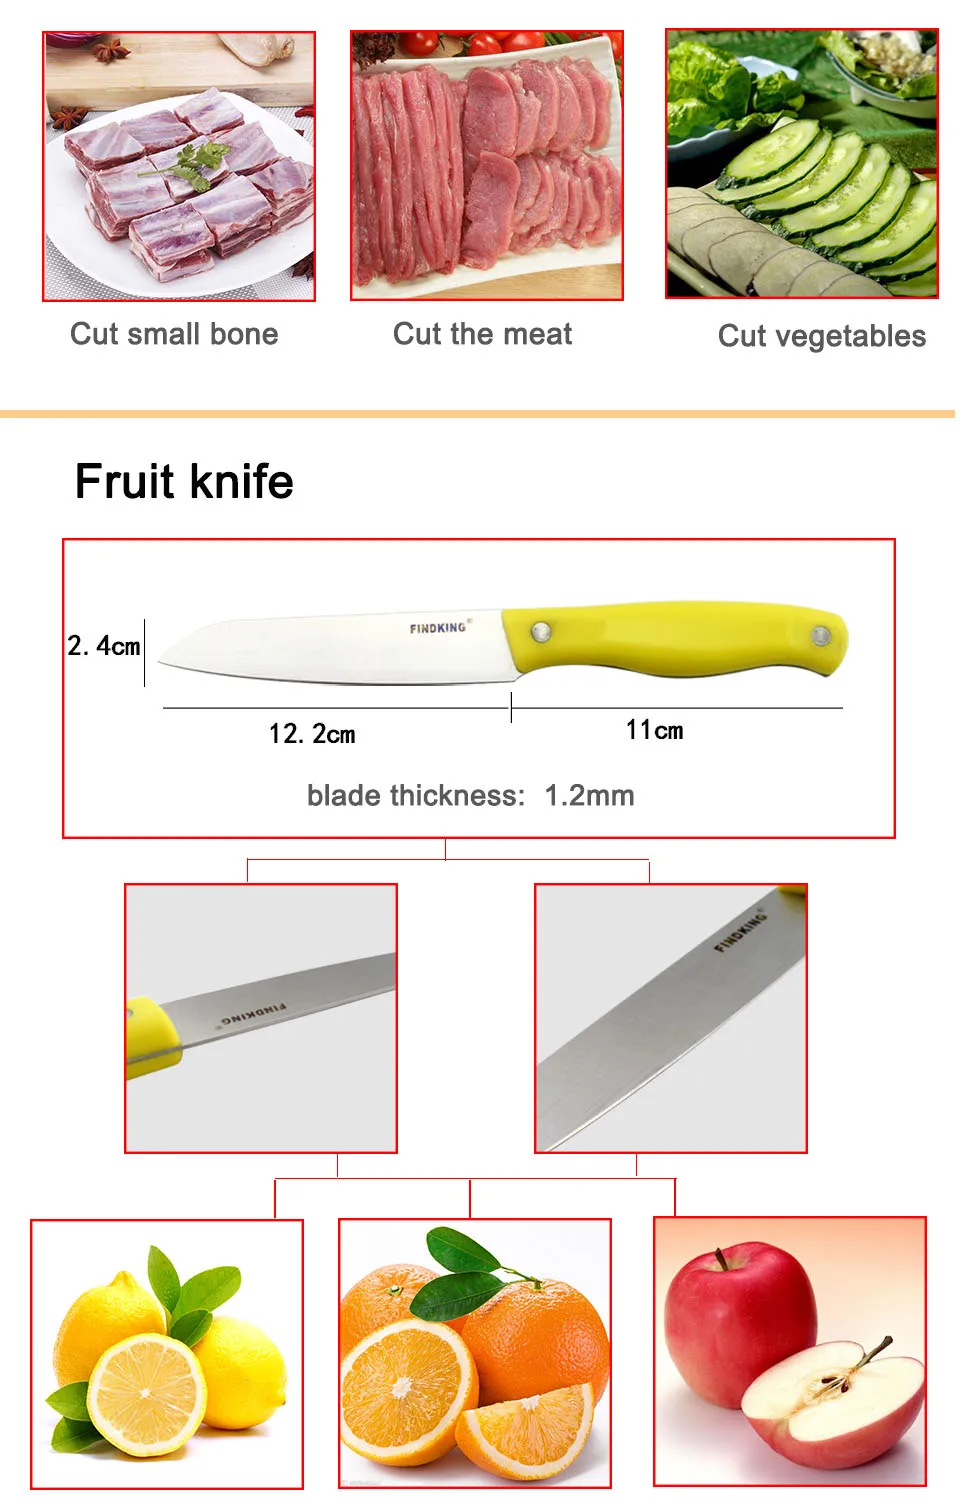 3 шт. в одном наборе высококачественный кухонный нож из нержавеющей стали, набор нож для мяса+ нож для фруктов+ Мульти нож для чистки